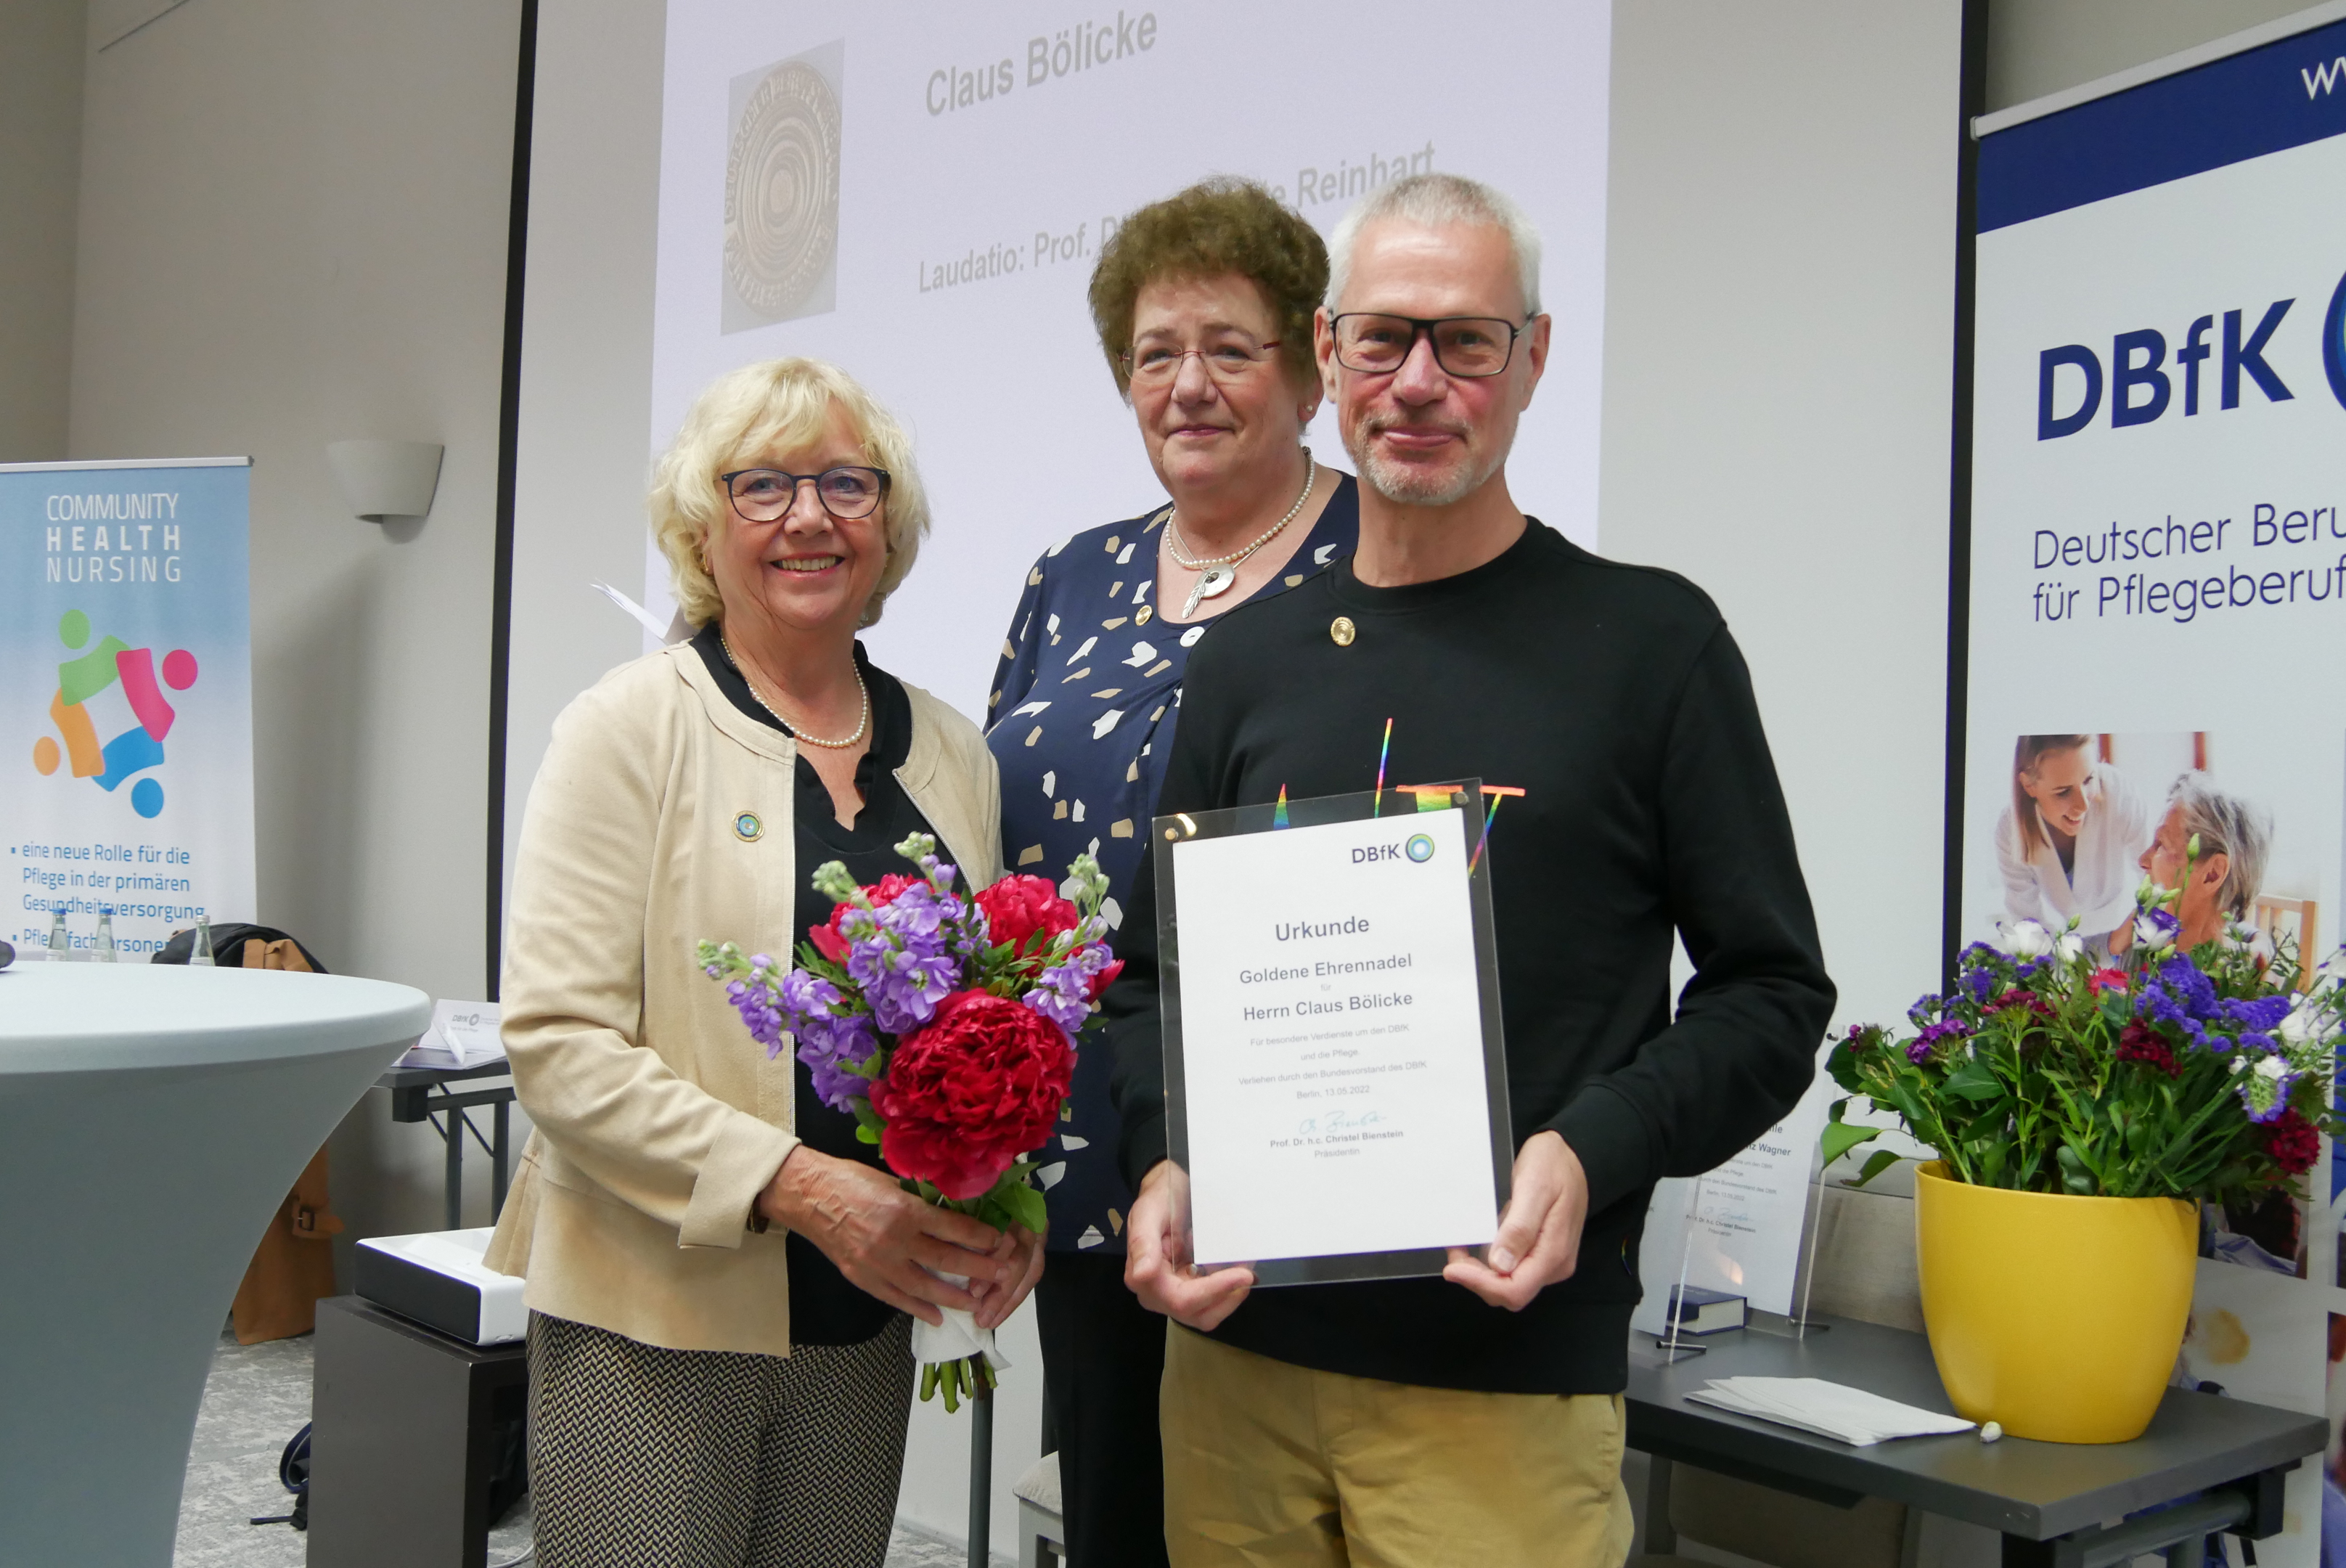 Prof. Dr. Christel Bienstein, Präsidentin des DBfK, Prof. Dr. Margarete Reinhart und Claus Bölicke mit einer Urkunde in der Hand. Das Foto ist von Ivonne Köhler-Roth.